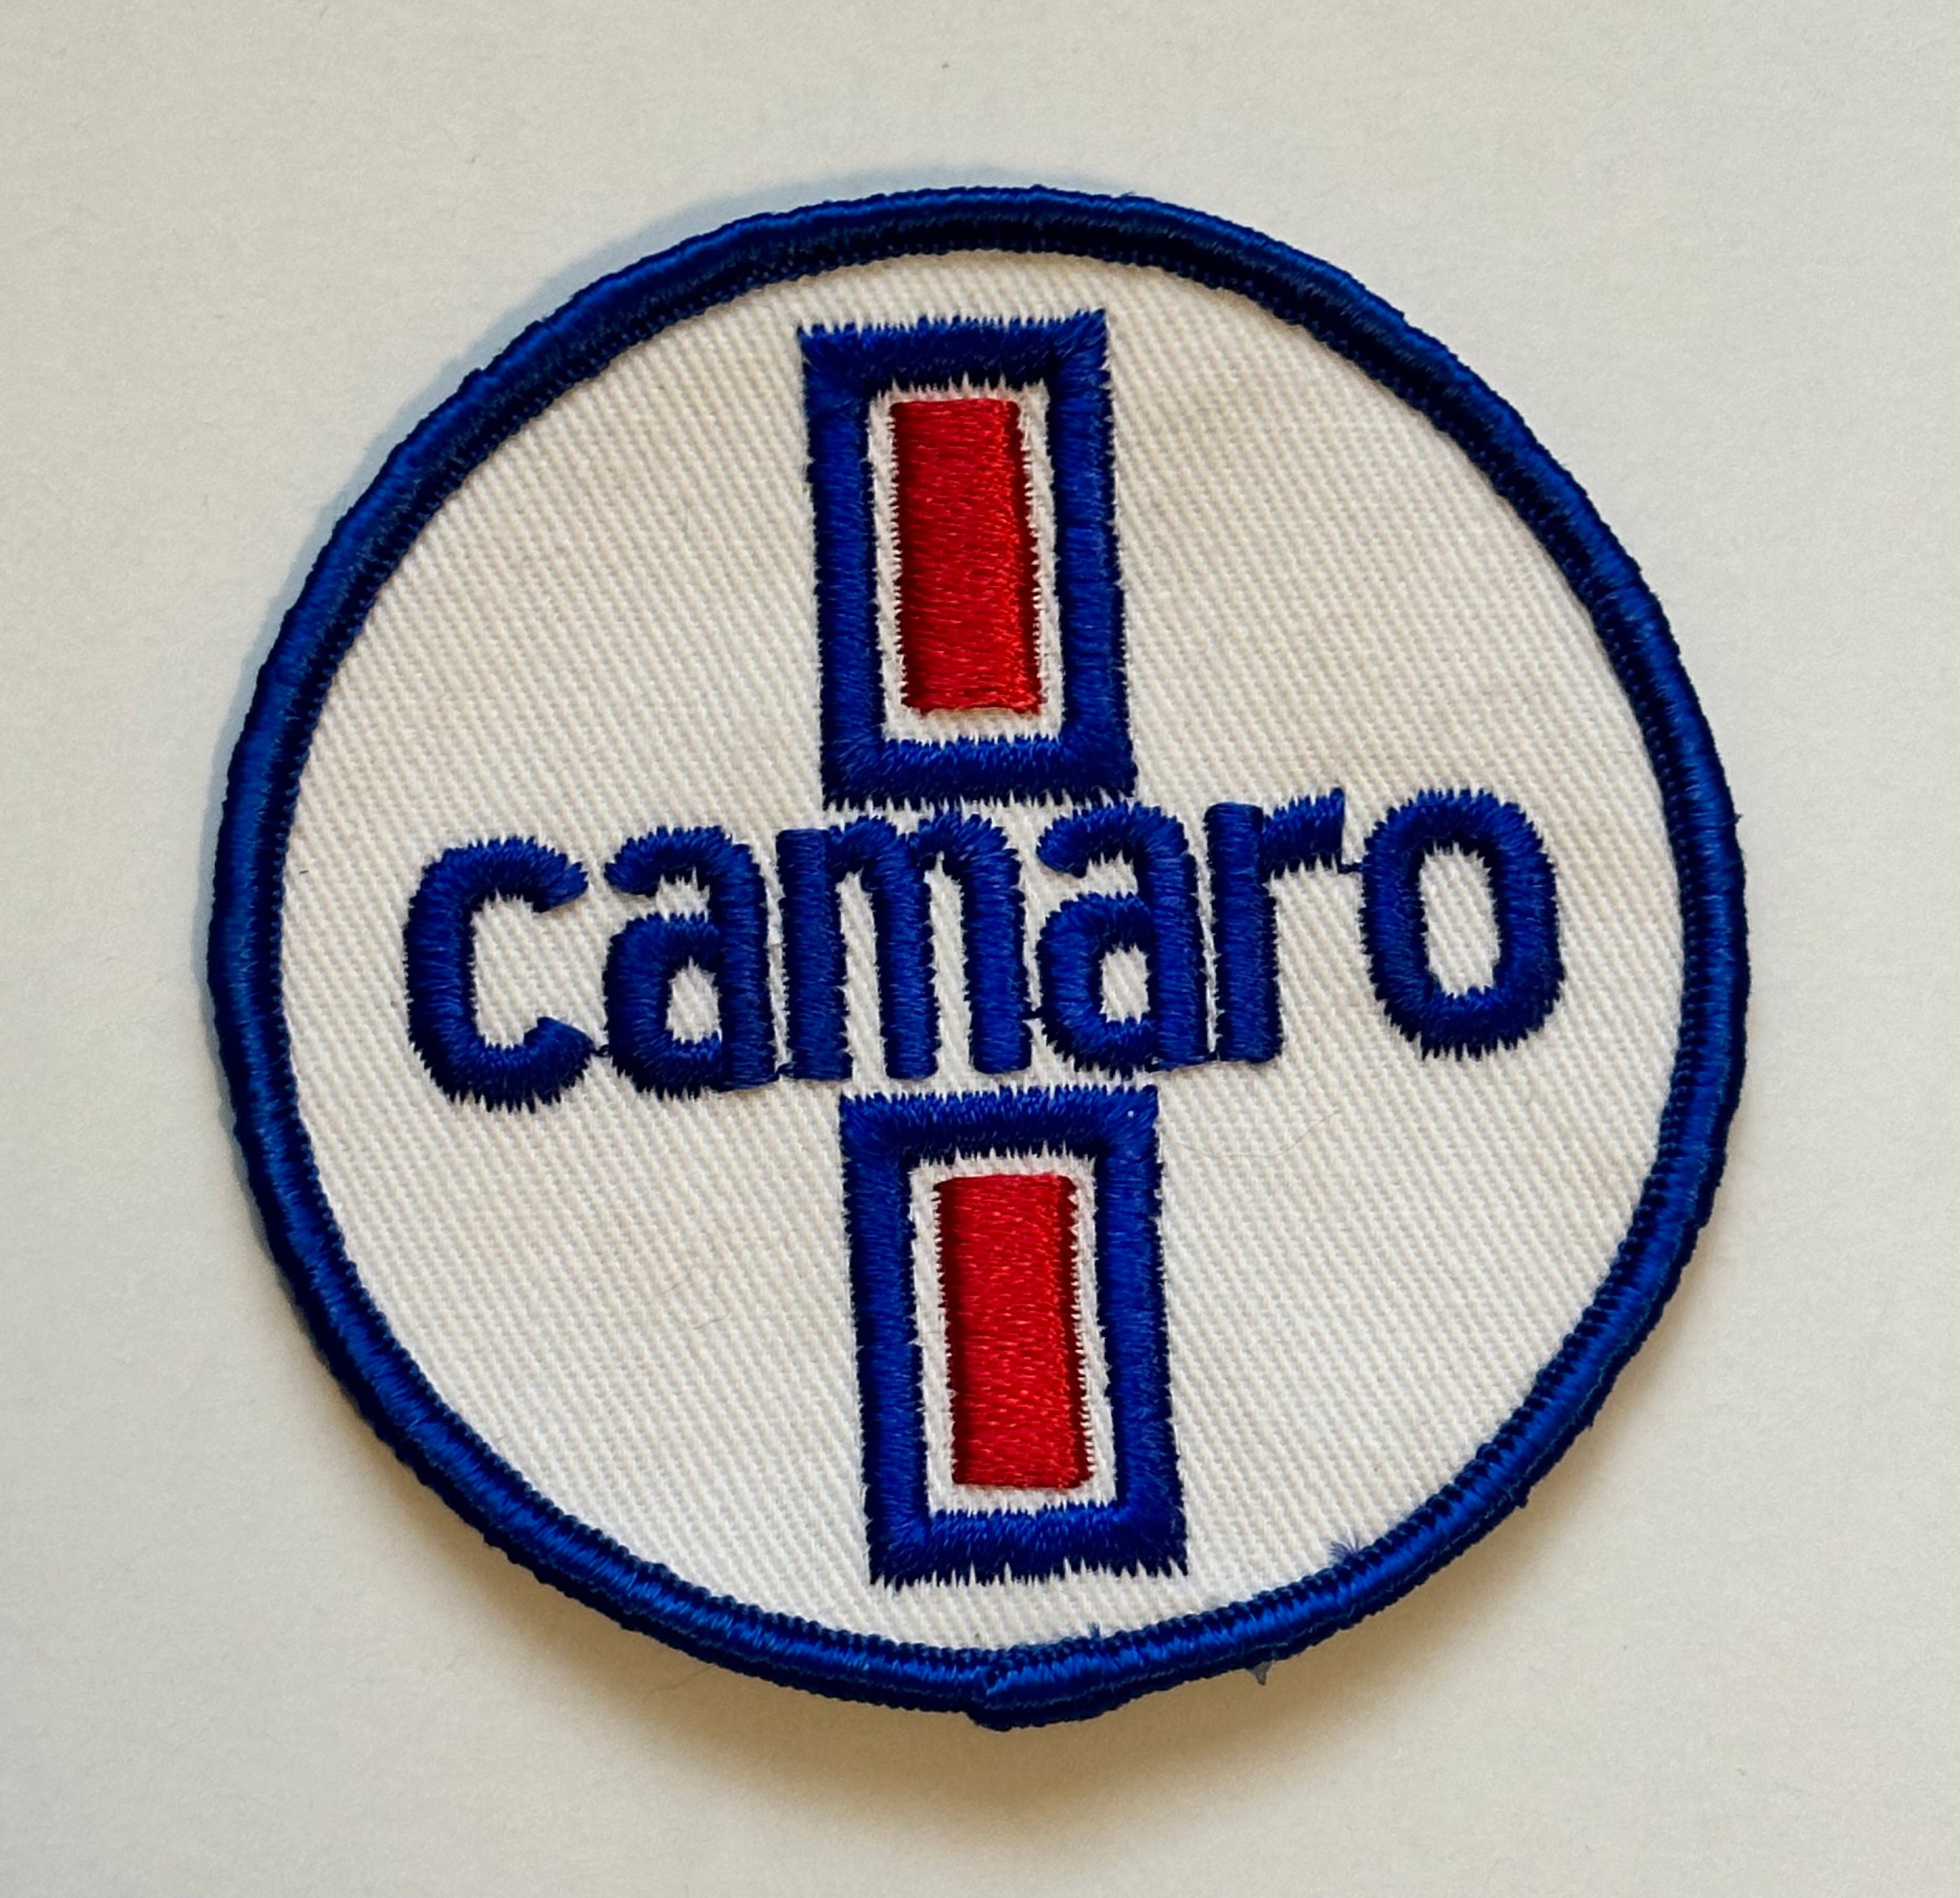 1980s Camaro vintage car patch